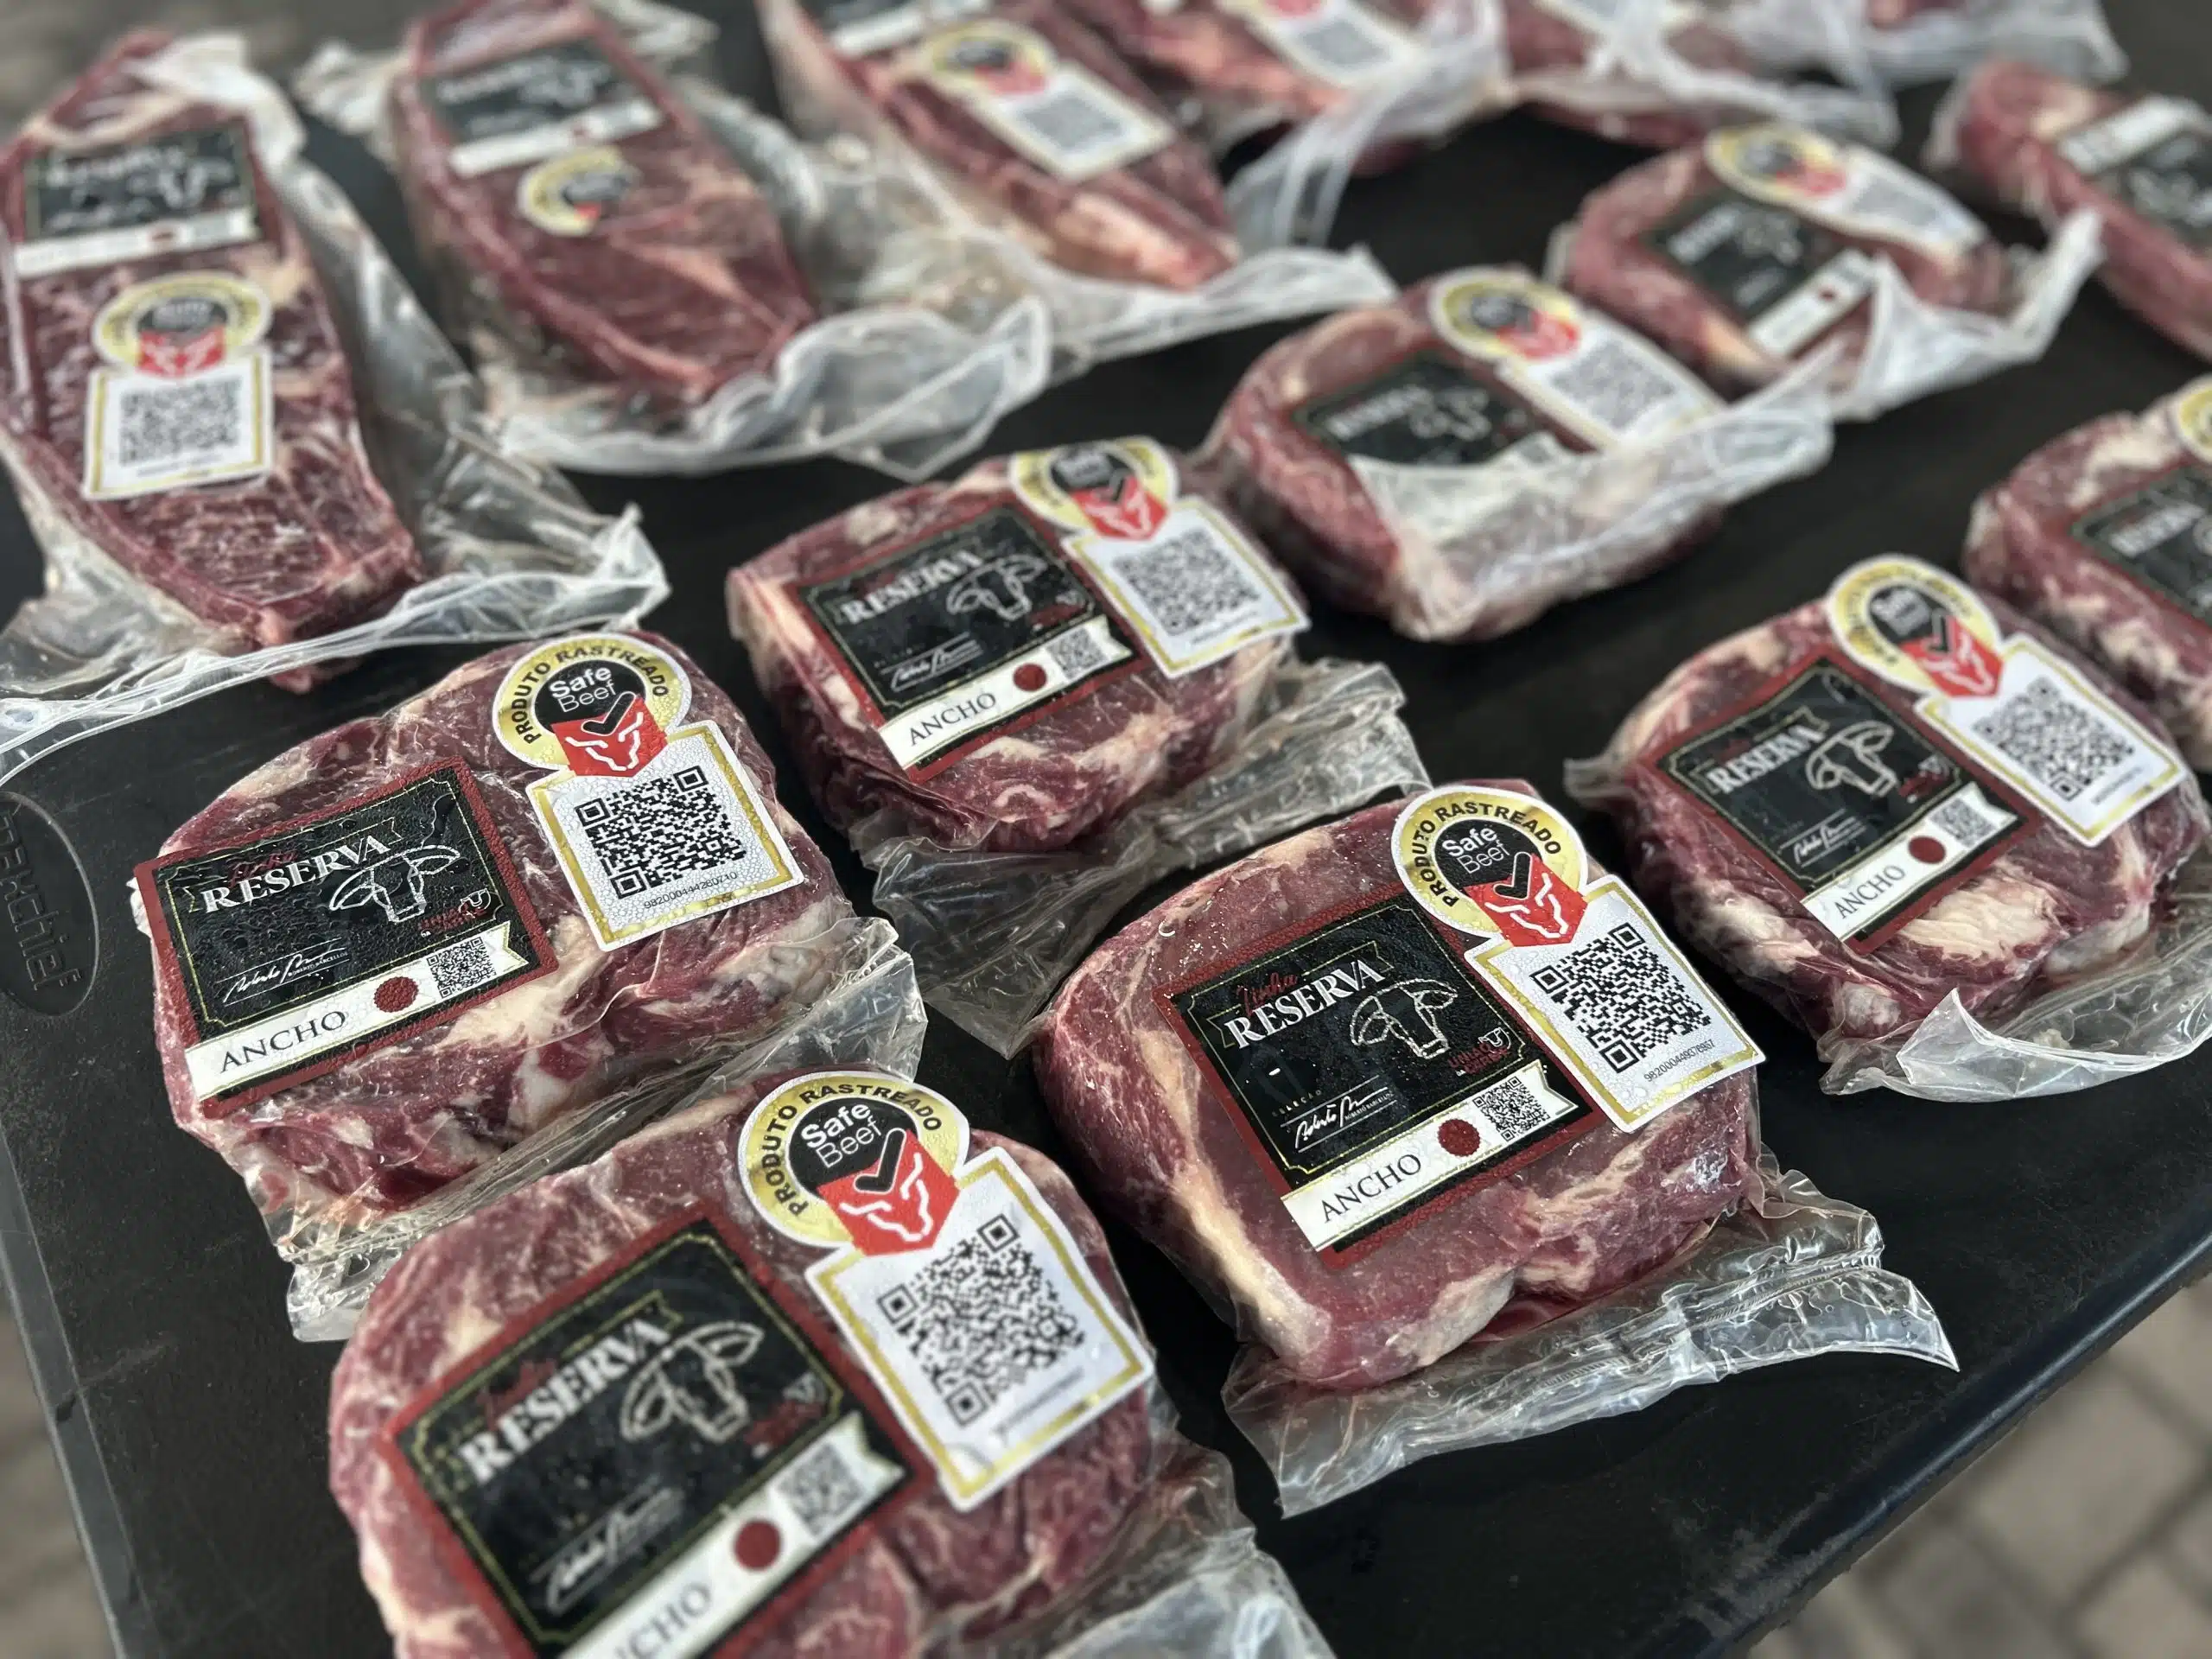 Na imagem, temos várias embalagens de carne bovina da linha Reserva com um QR Code disponível para rastreamento via SafeBeef.